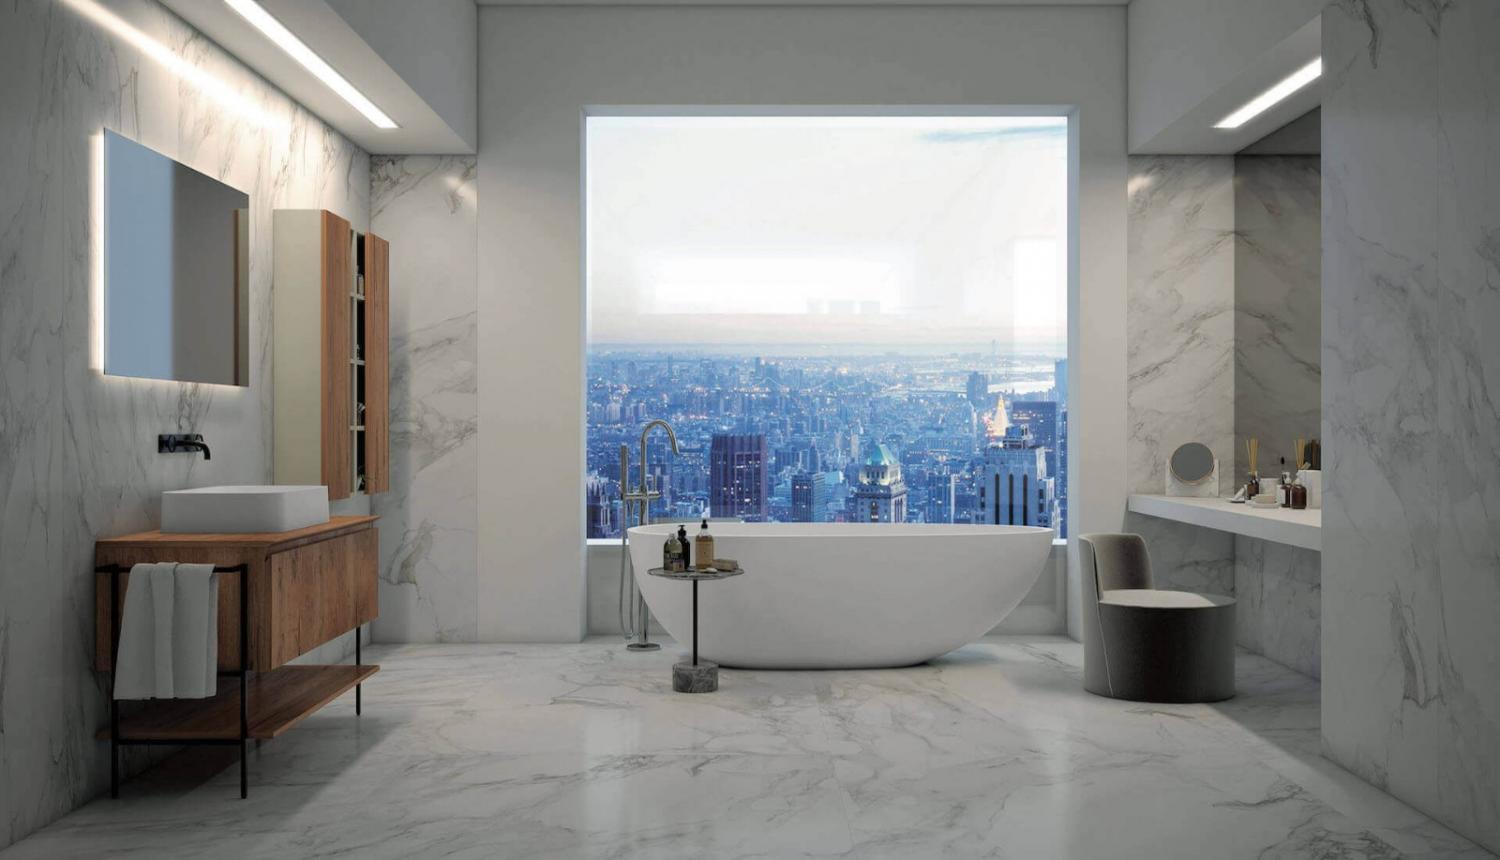 Salle de bains avec un revêtement en imitation marbre - sol et mur